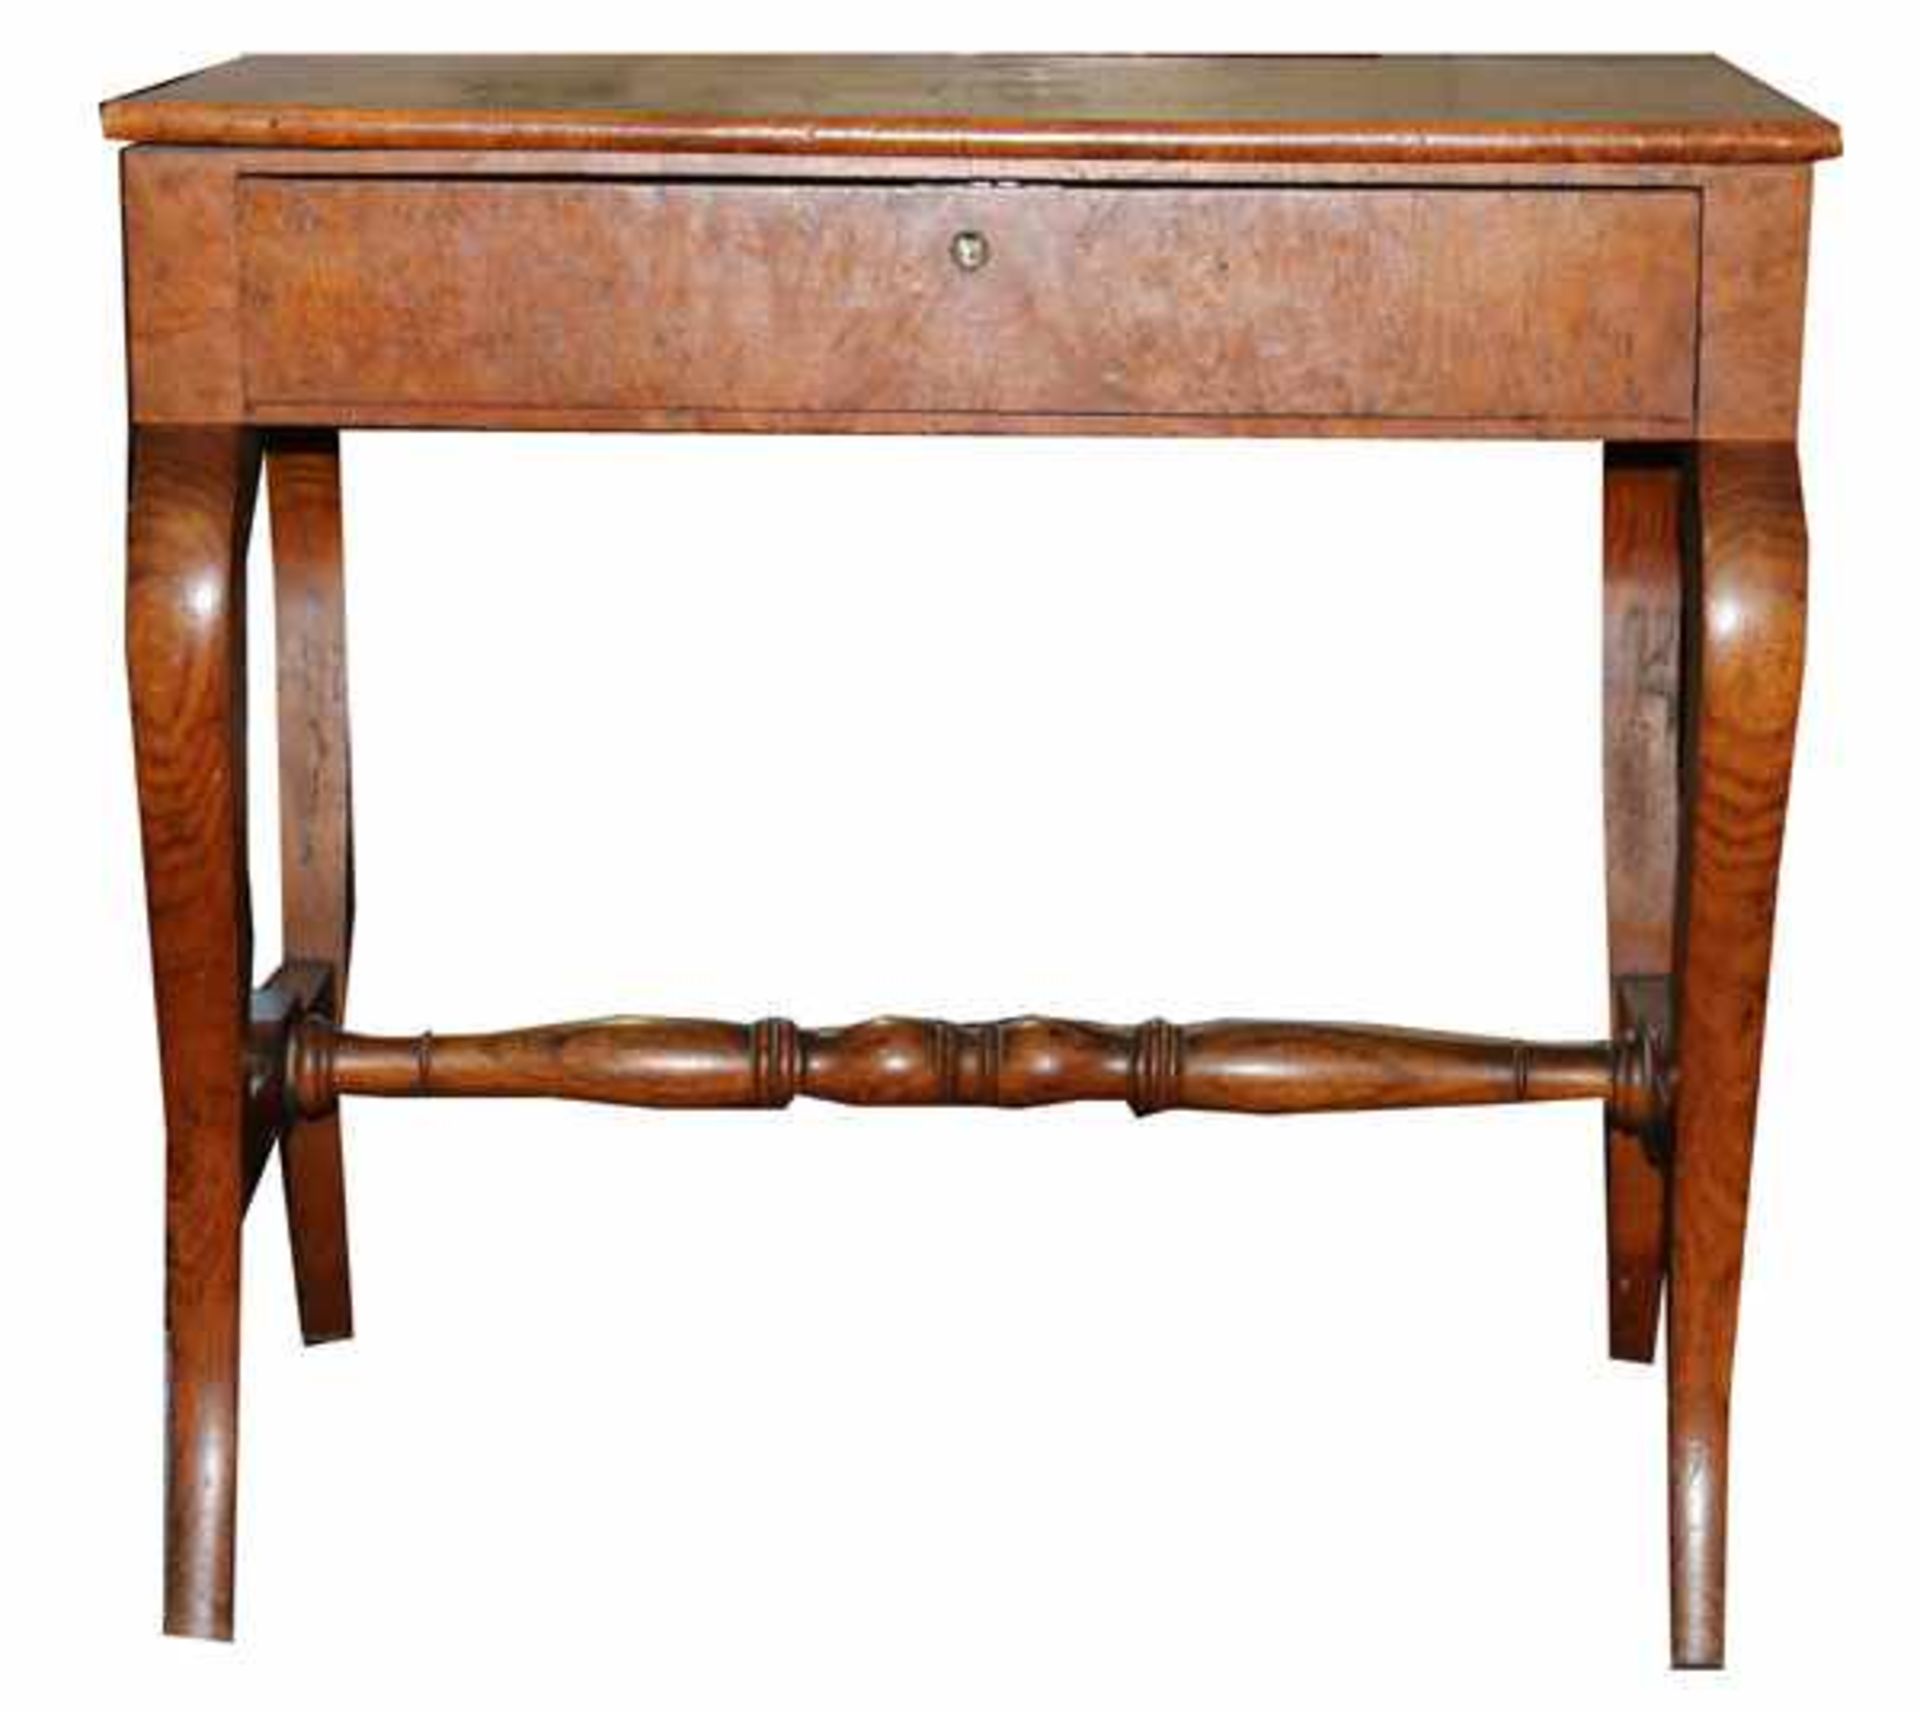 Tisch auf geschwungenen Beinen, Korpus mit einer Schublade, 19. Jahrhundert, H 74 cm, B 81 cm, T